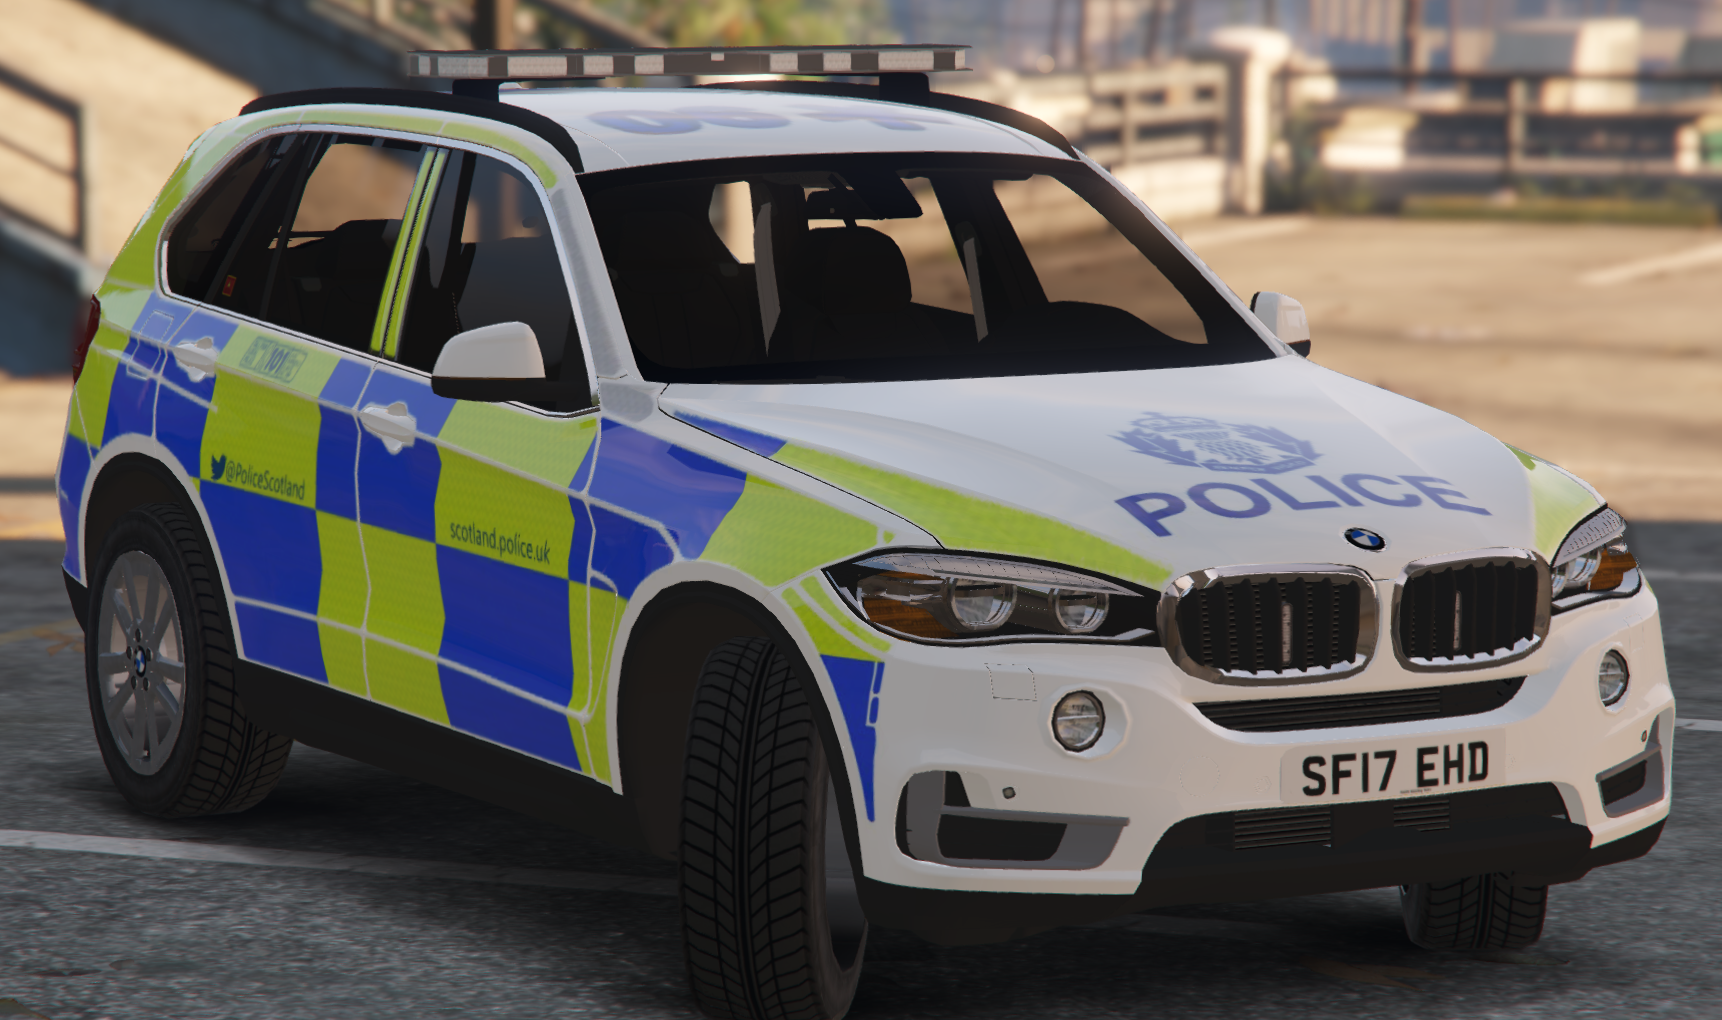 Police Scotland BMW X5 F15